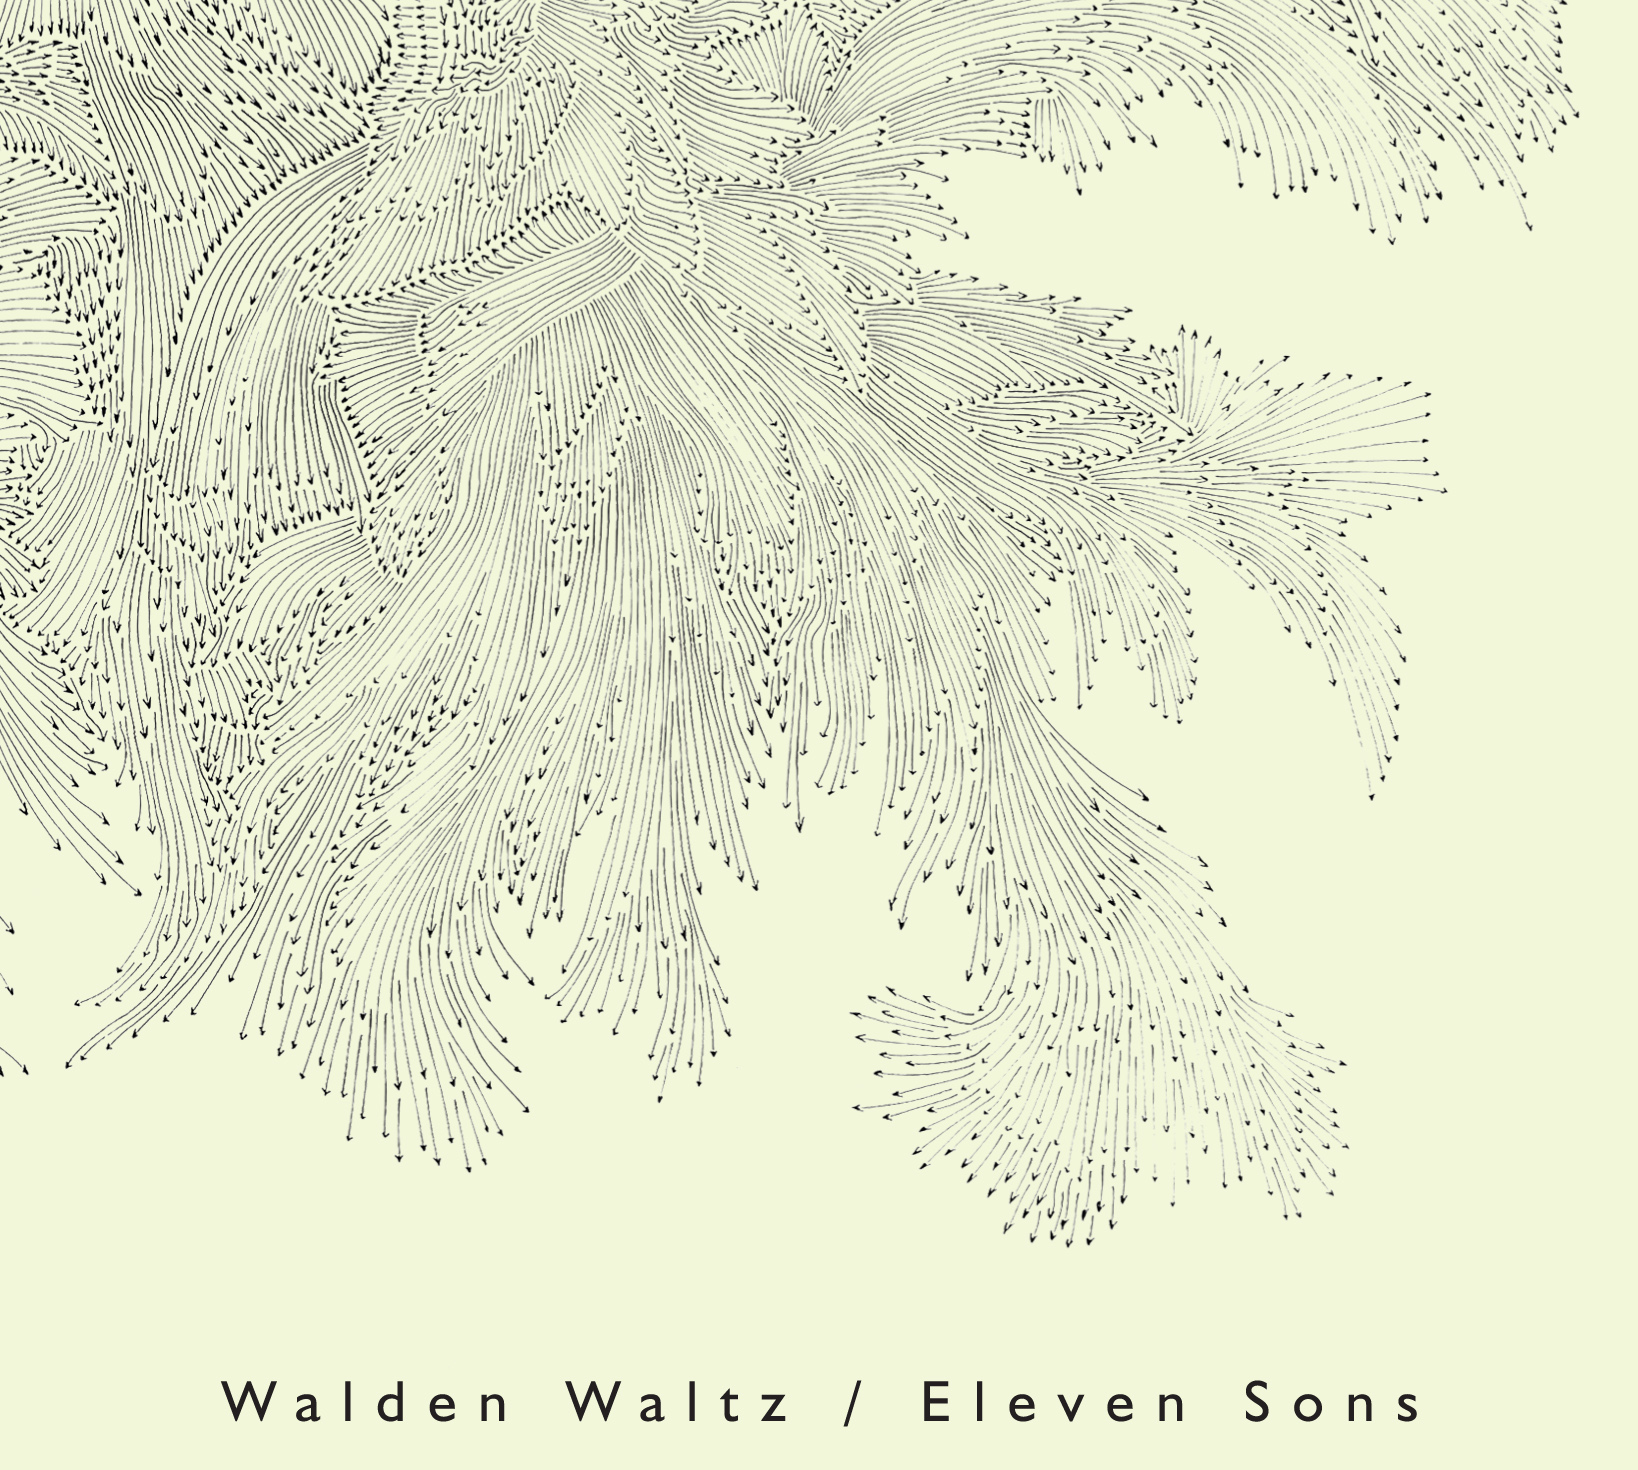 Walden Waltz- Eleven Sons